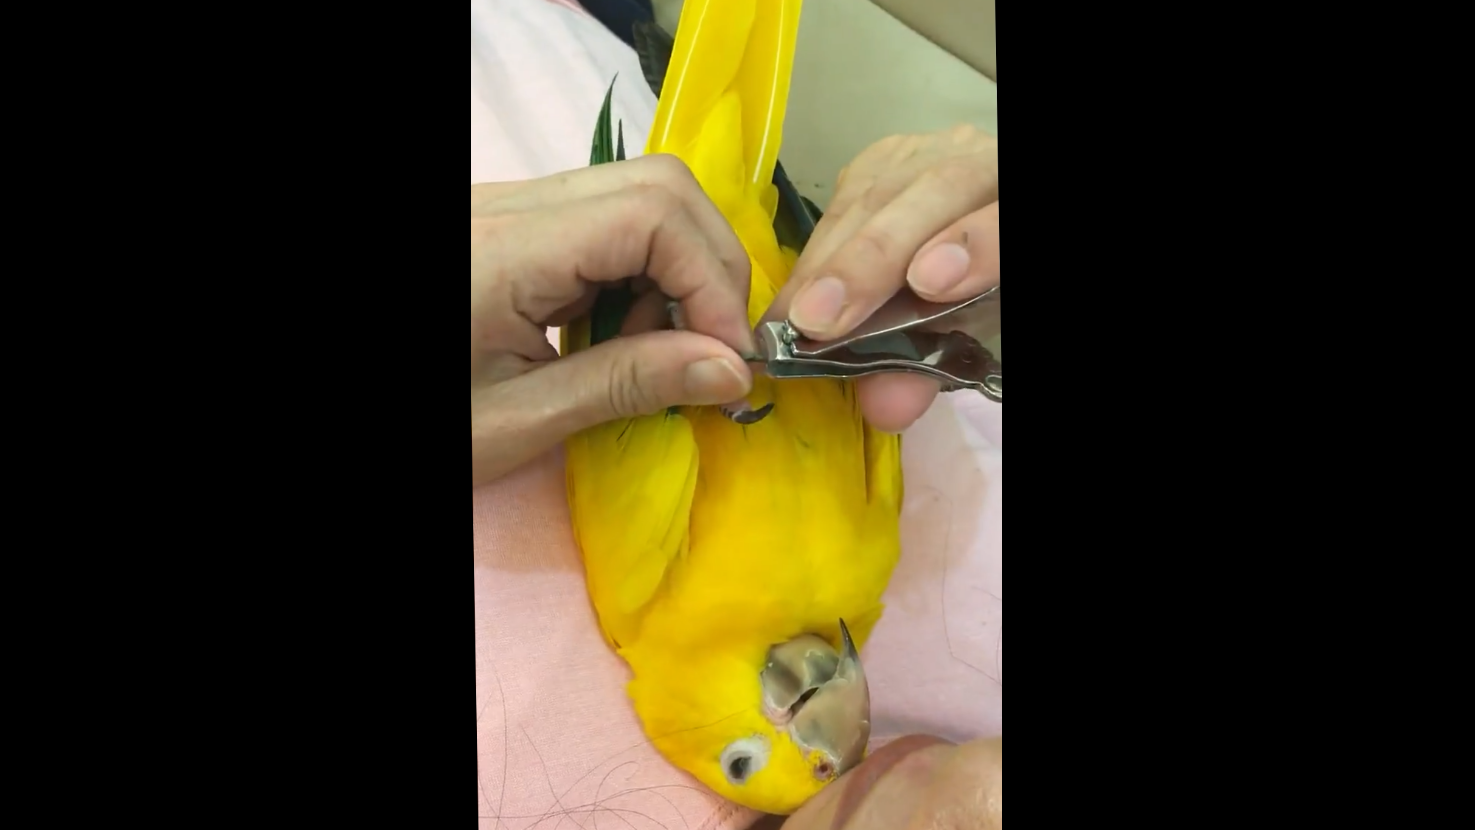 Как подрезать клюв попугаю в домашних условиях